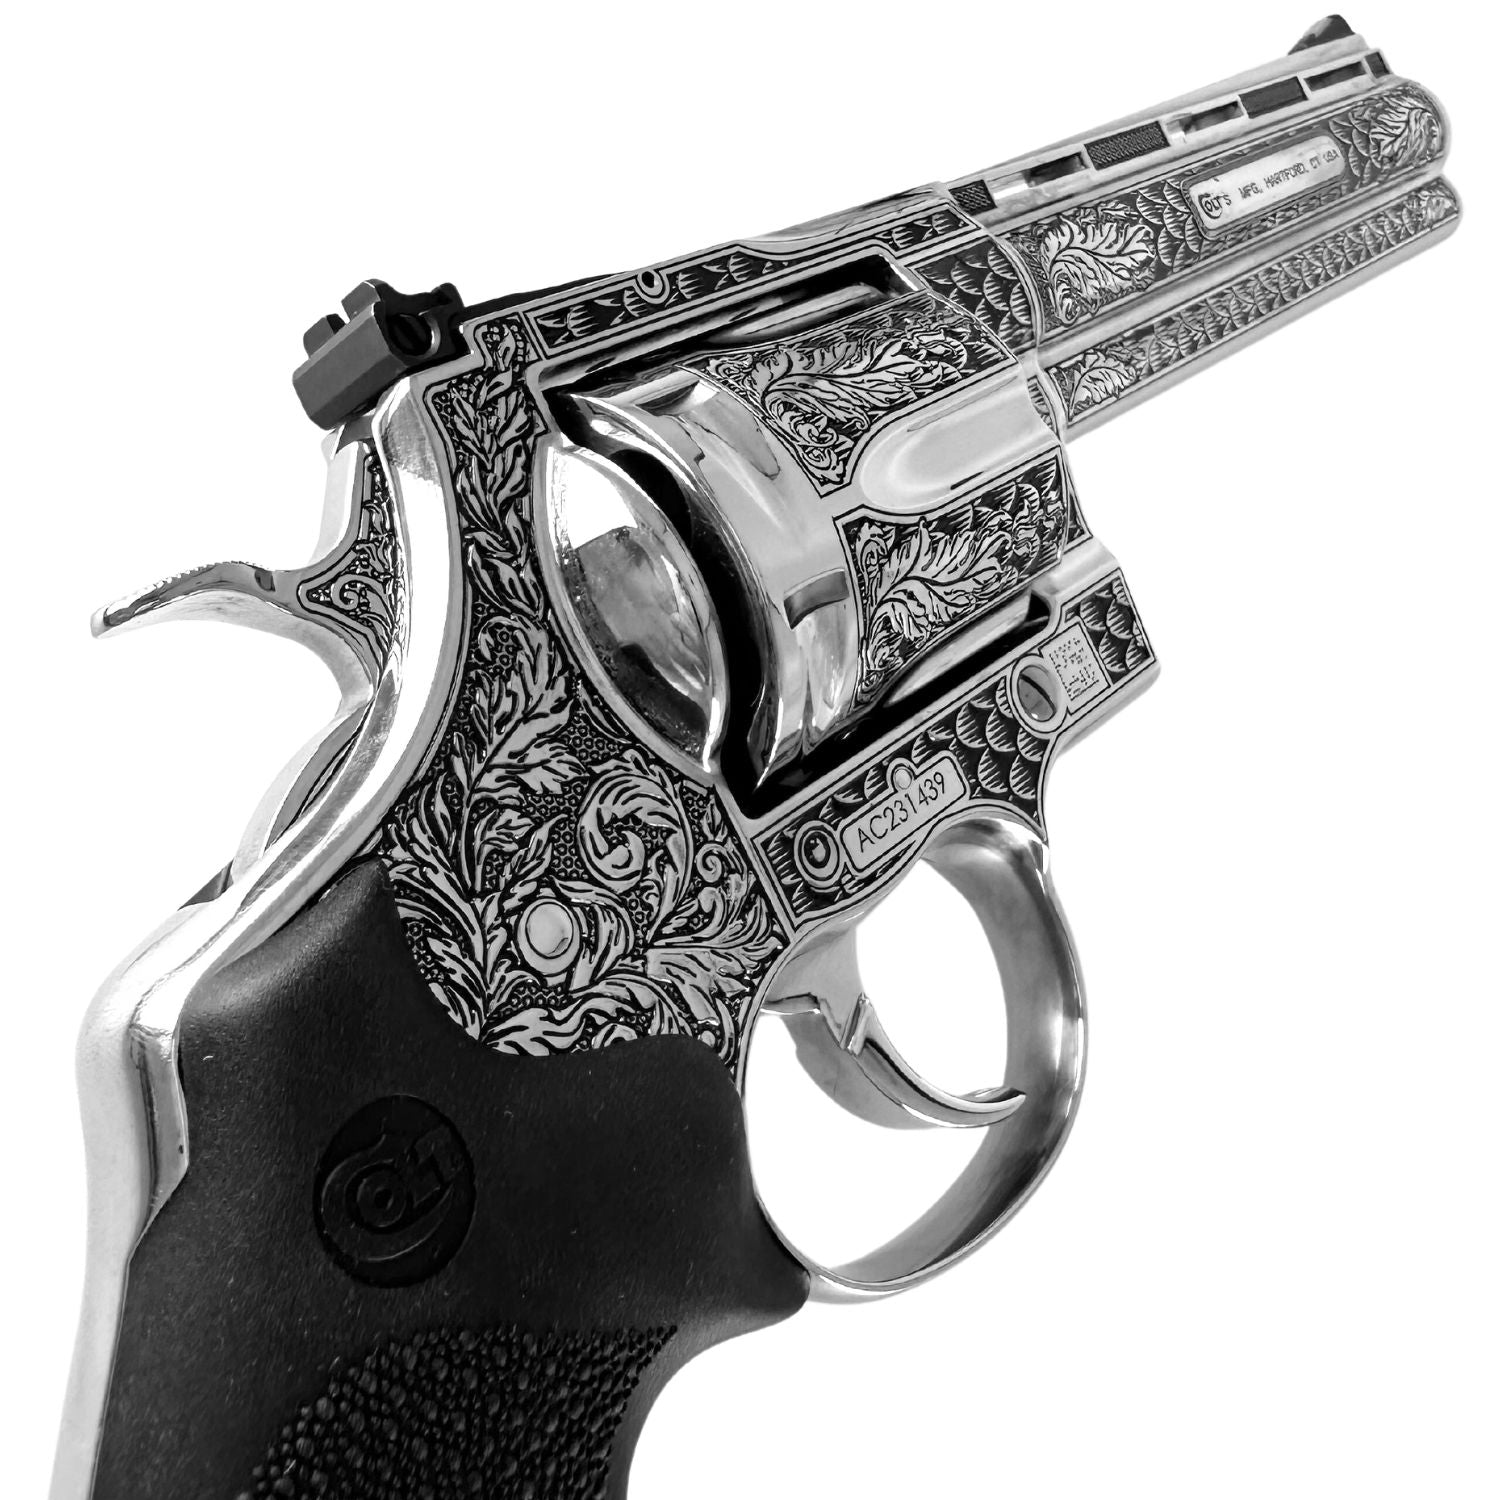 Colt Anaconda, 6", .44 Magnum, Engraved High Polished Stainless Steel, SKU: 6966458679398